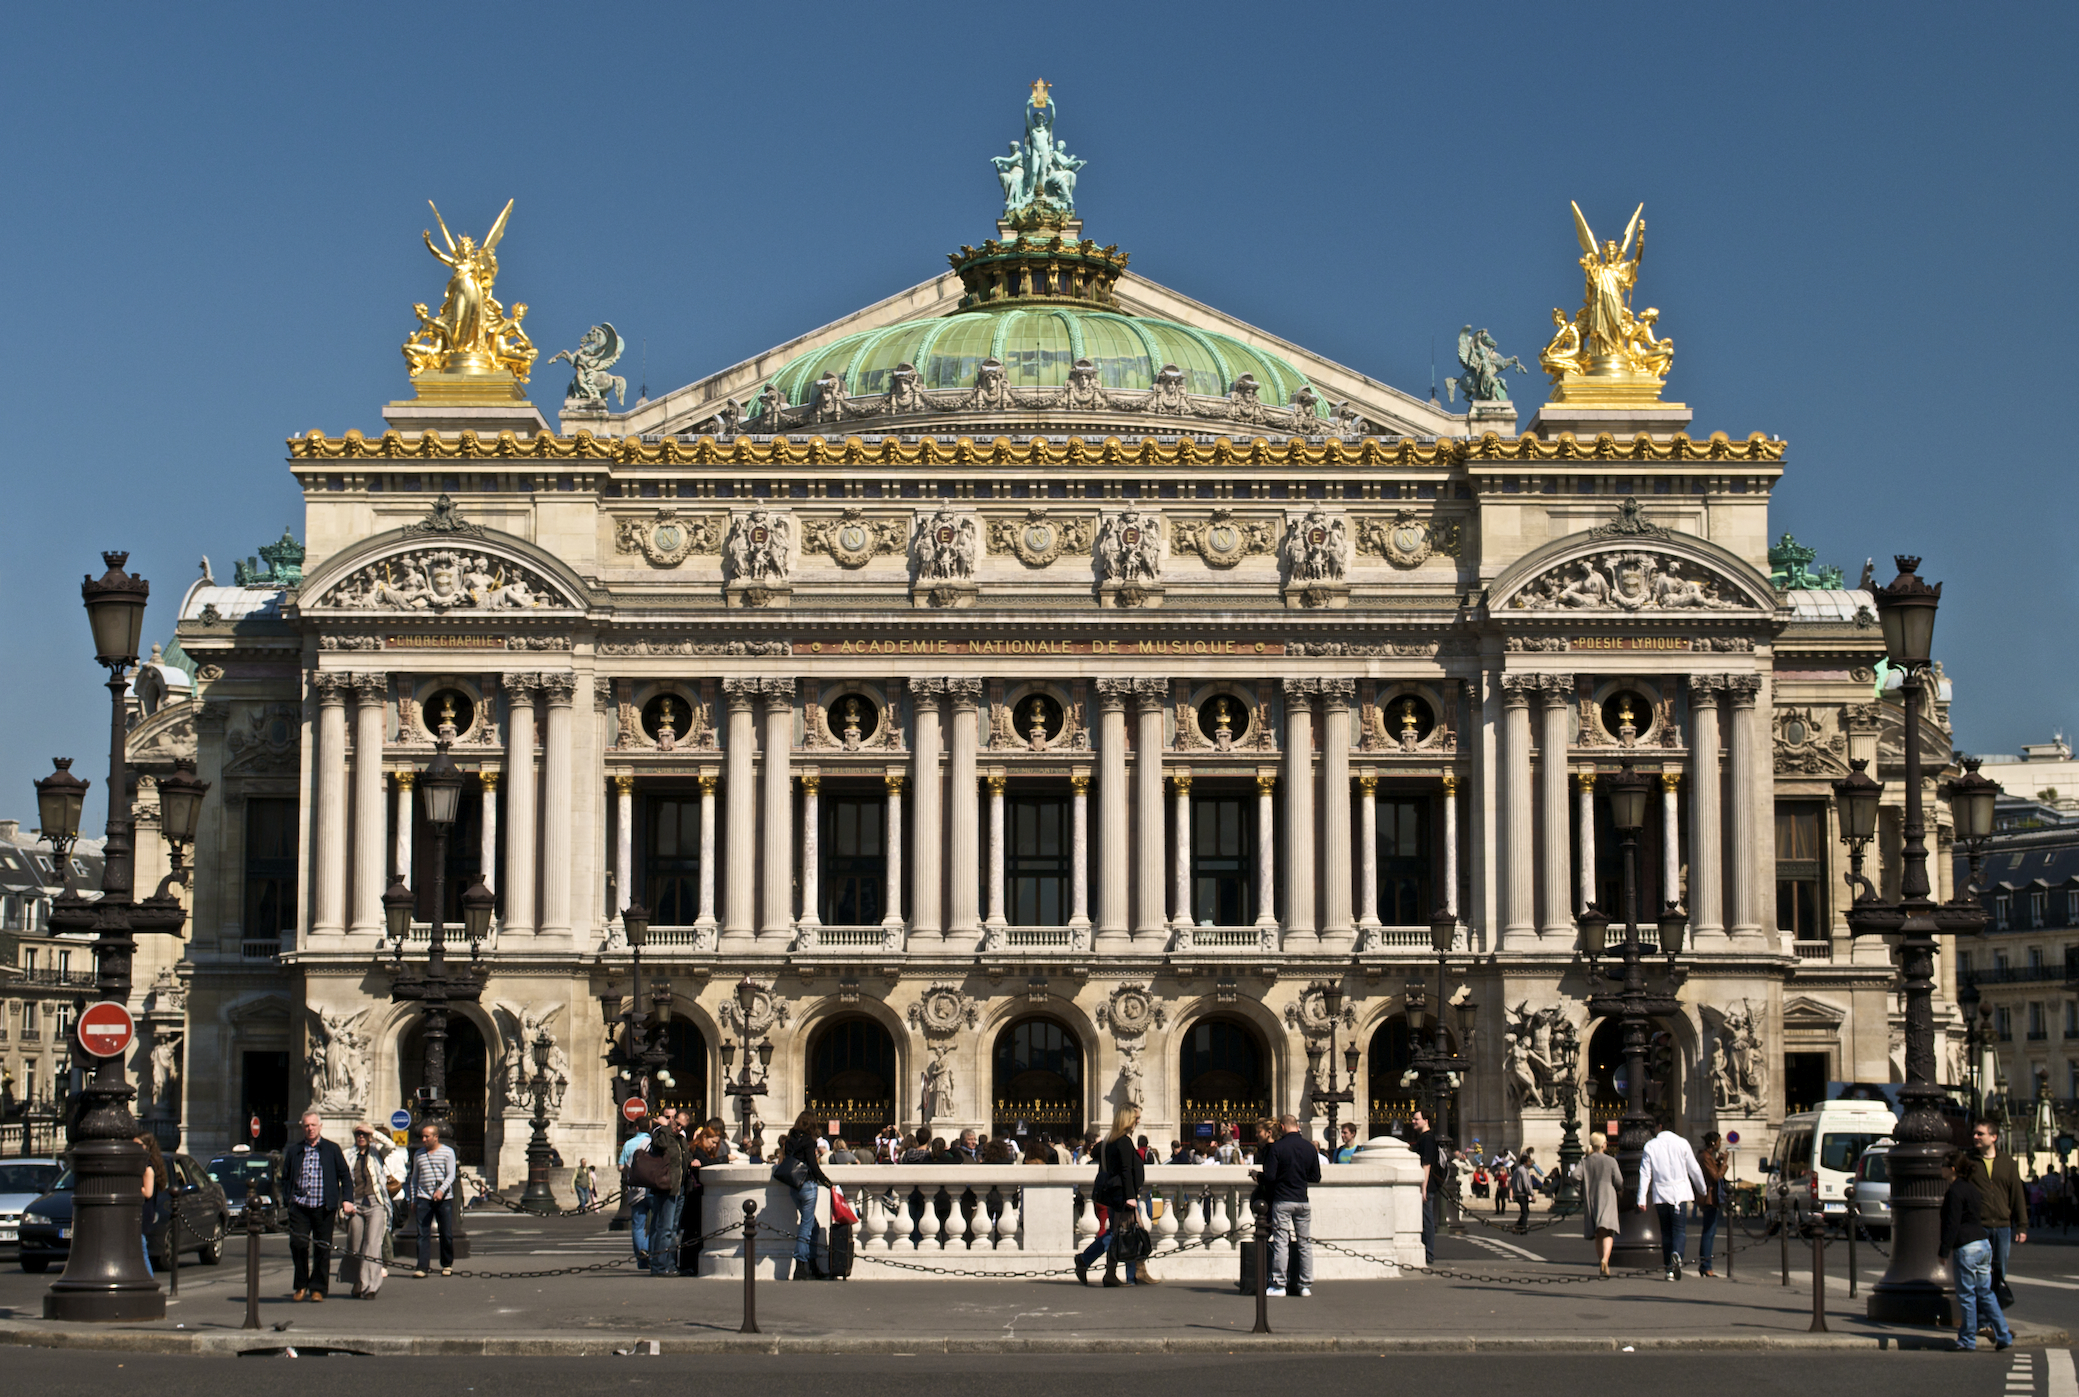  Опера Гарнье в Париже. Известнейший театр оперы и балета в мире